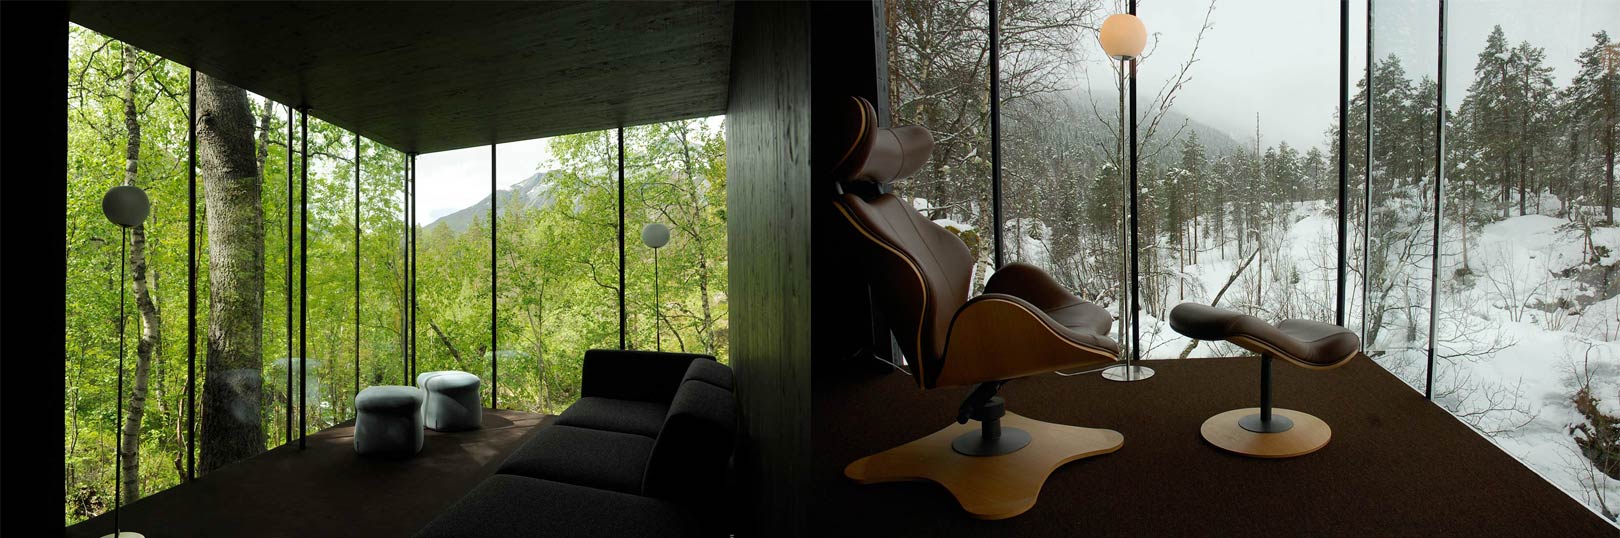 Juvet Landscape Hotel interiors.